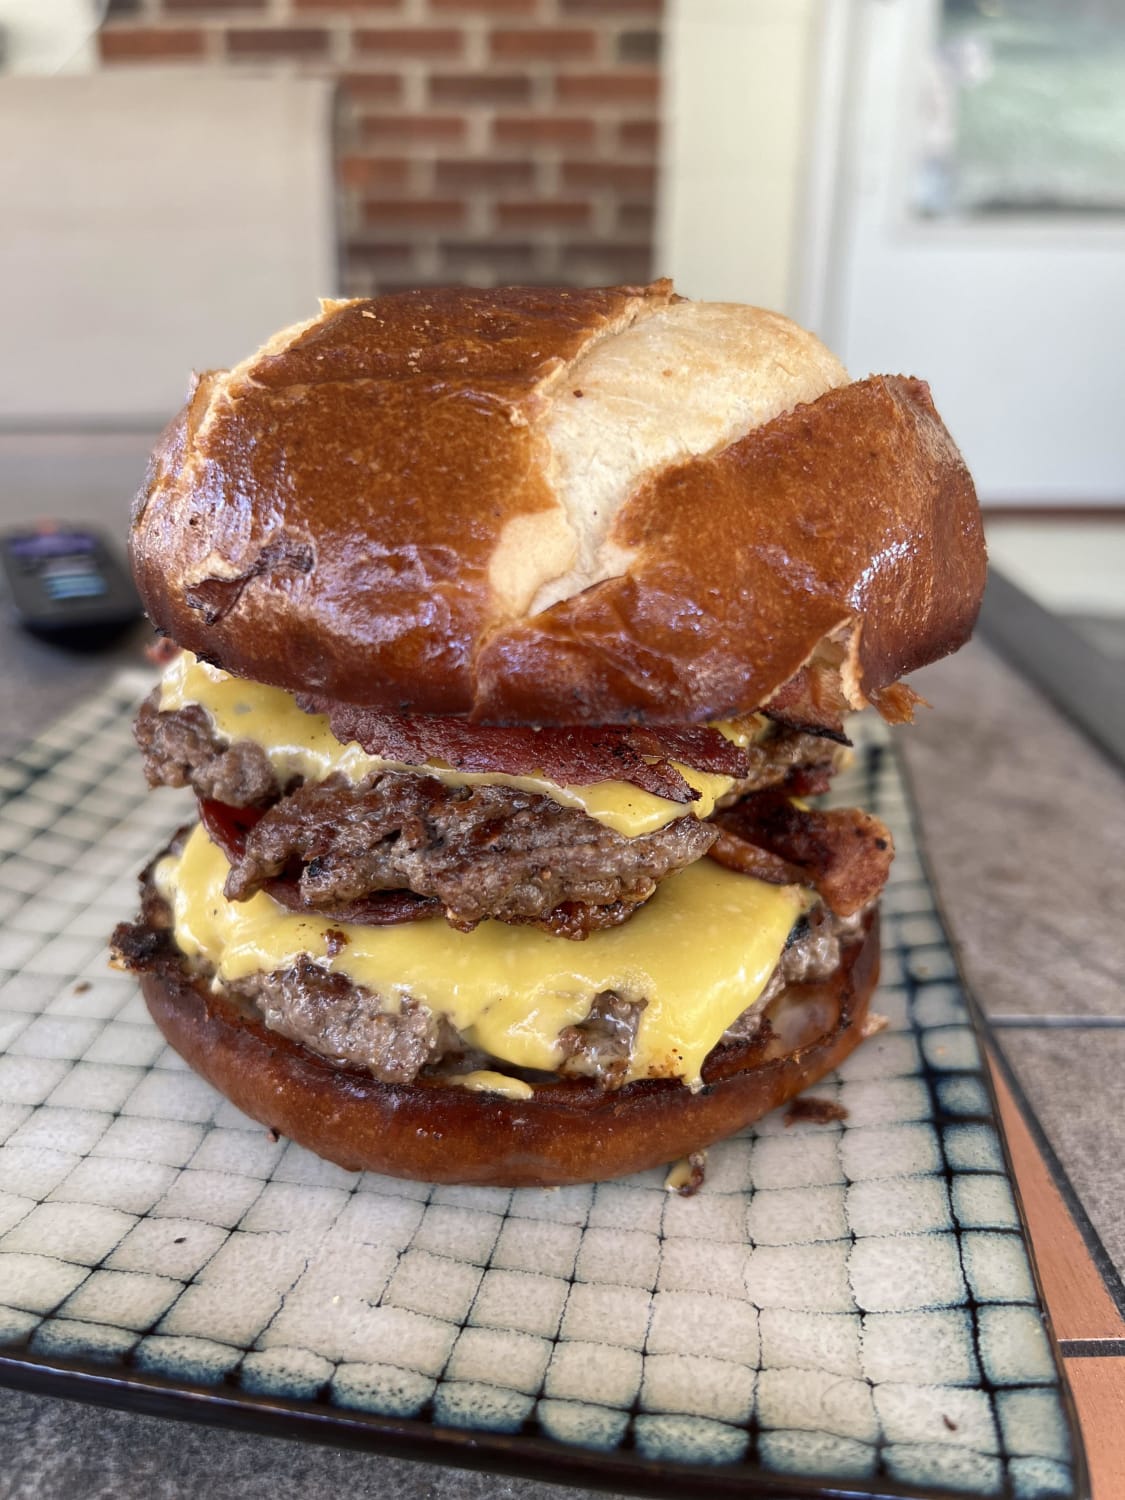 Double cheeseburger with bacon on a pretzel bun [homemade]